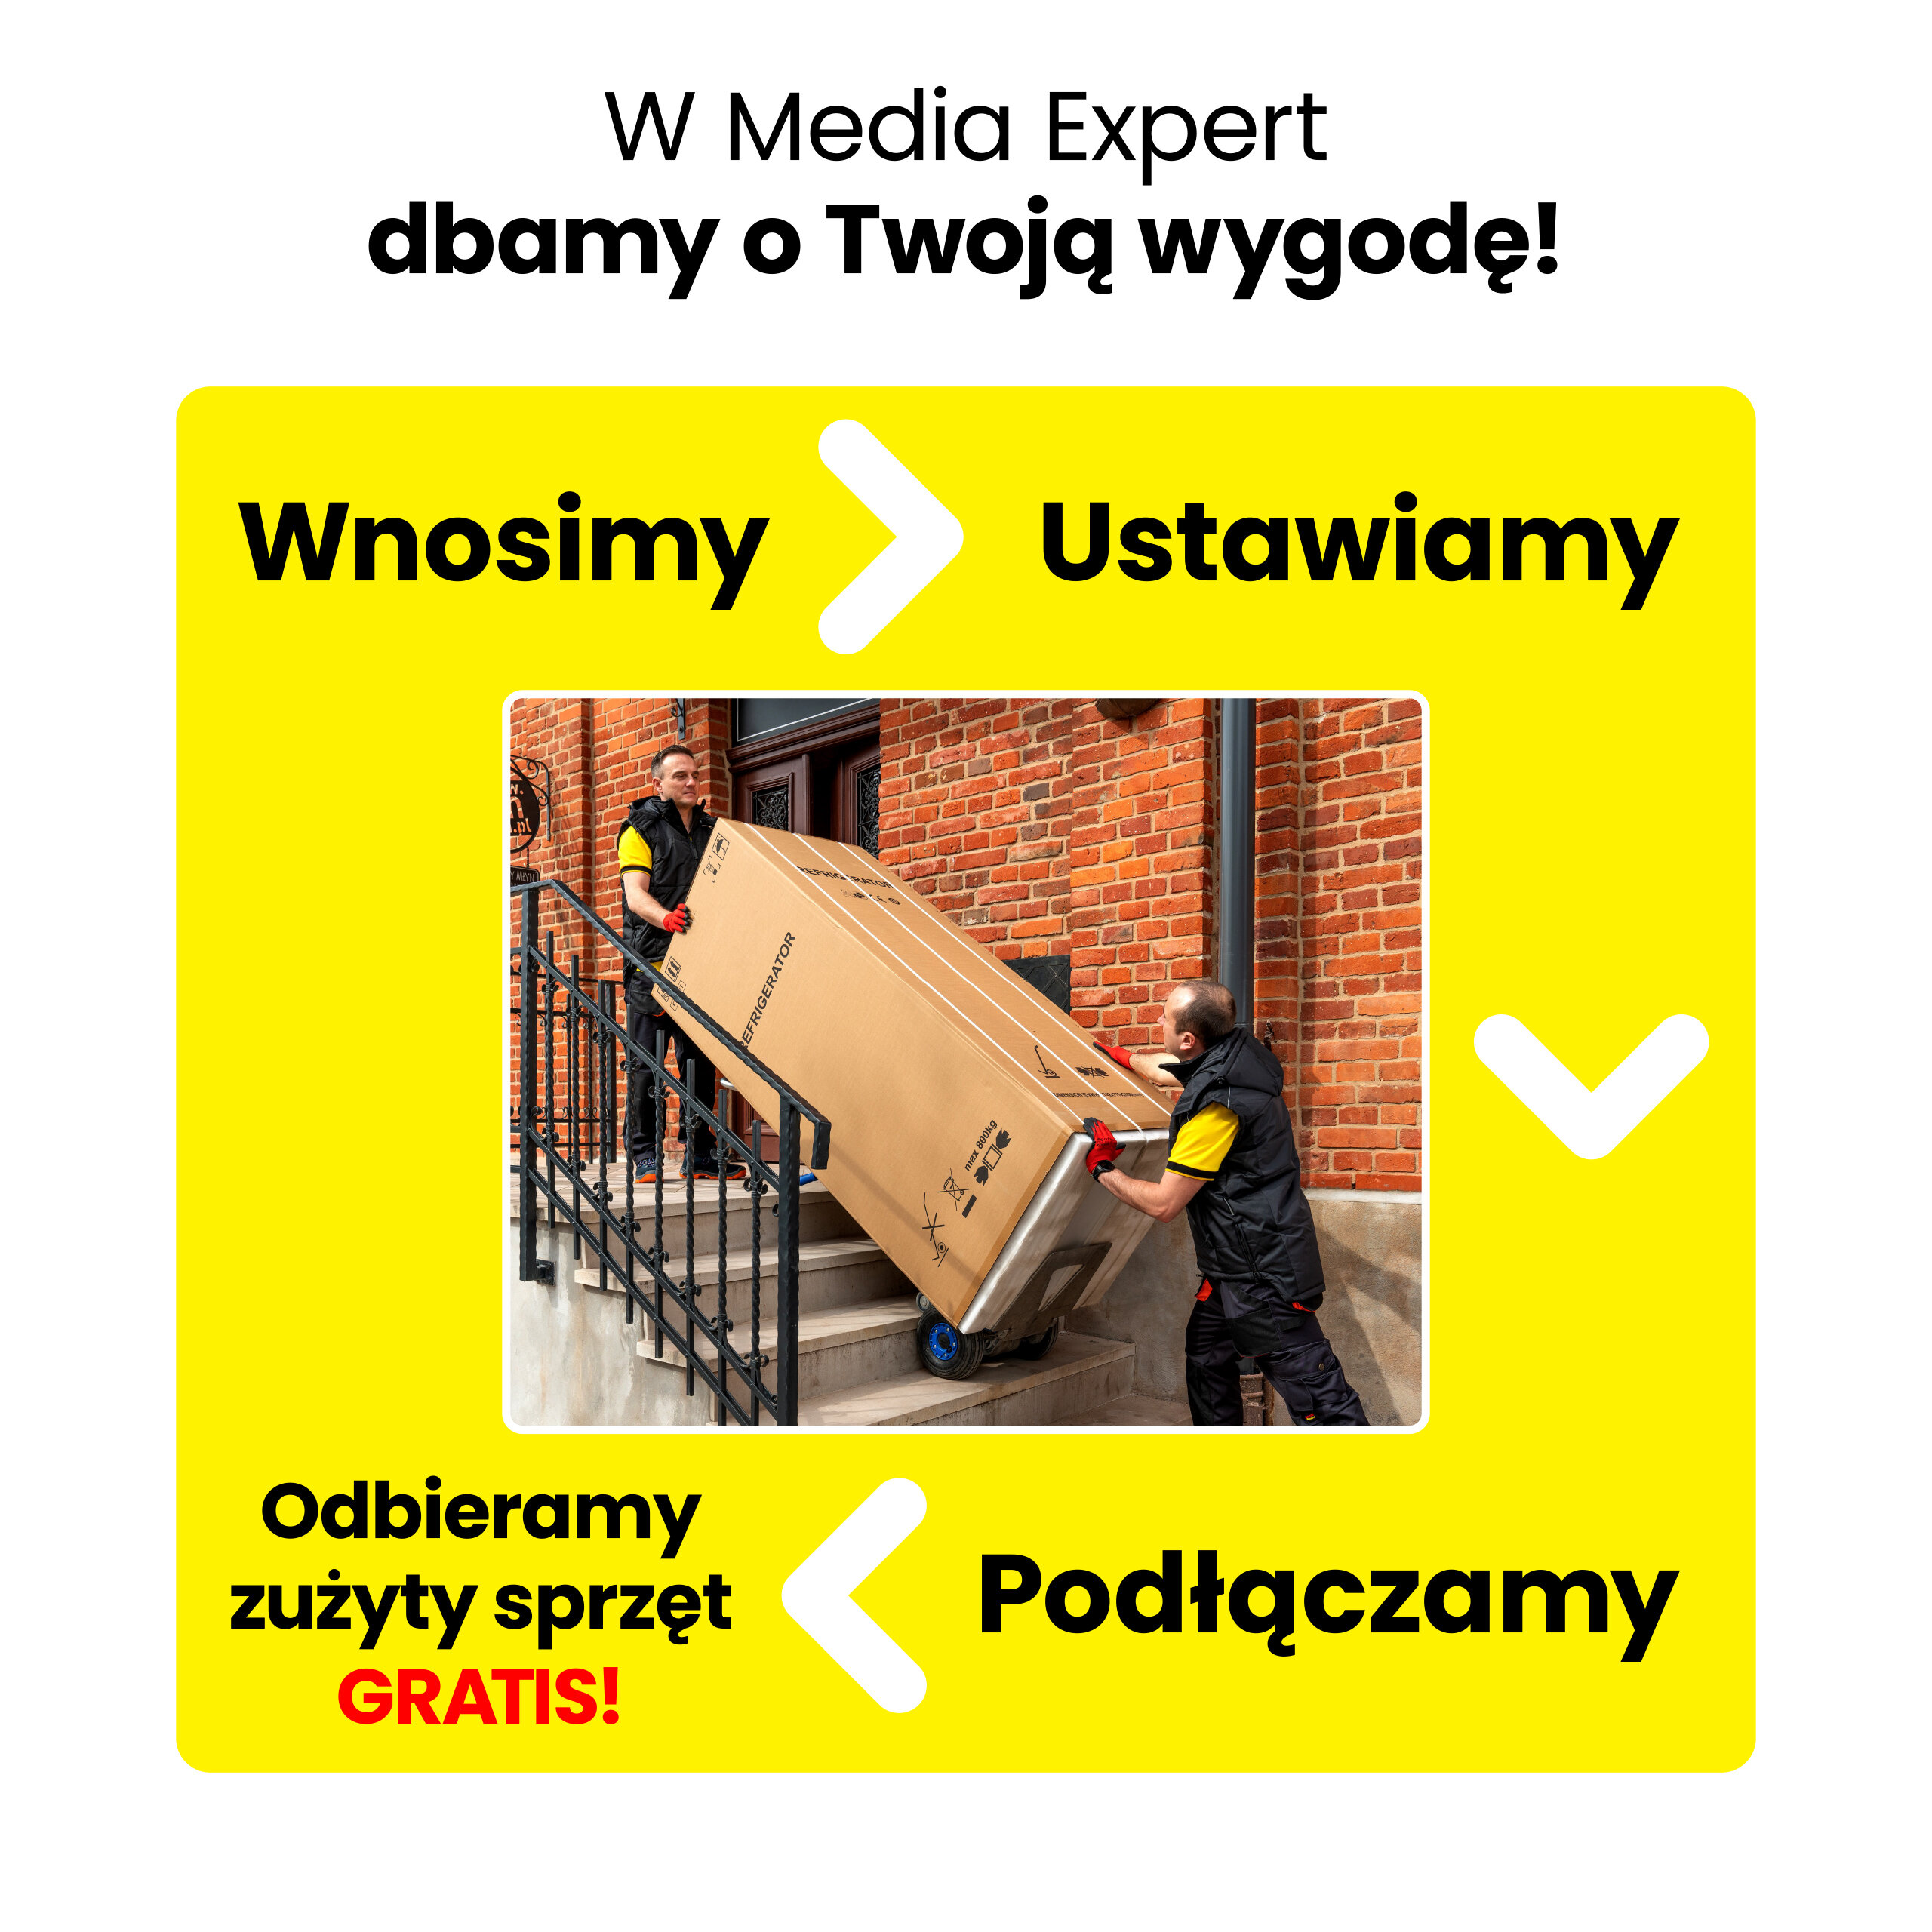 WHIRLPOOL BLF 5121 OX 156cm Srebrna Lodówka - niskie ceny i opinie w Media  Expert